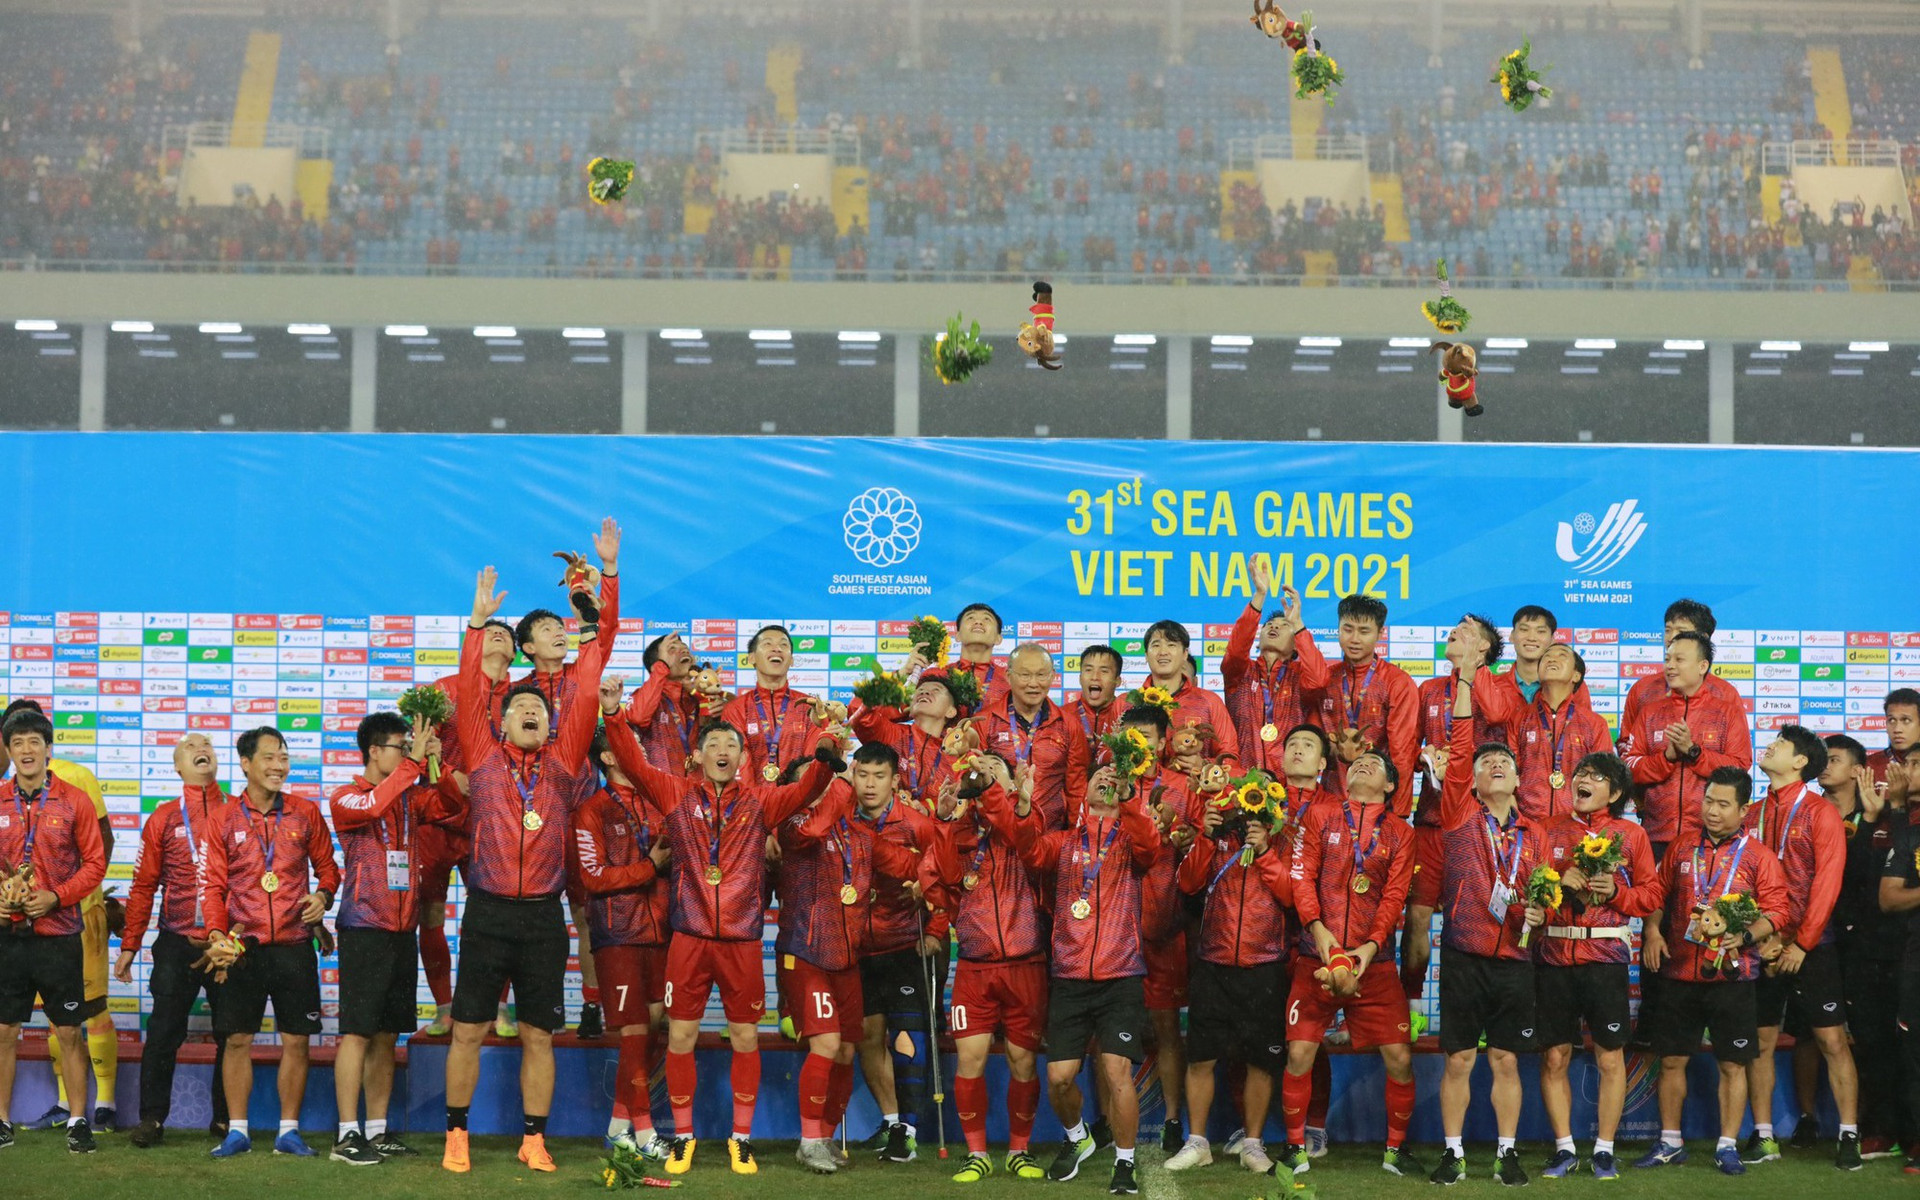 Tin tức, hình ảnh, video clip mới nhất về đội tuyển Việt Nam